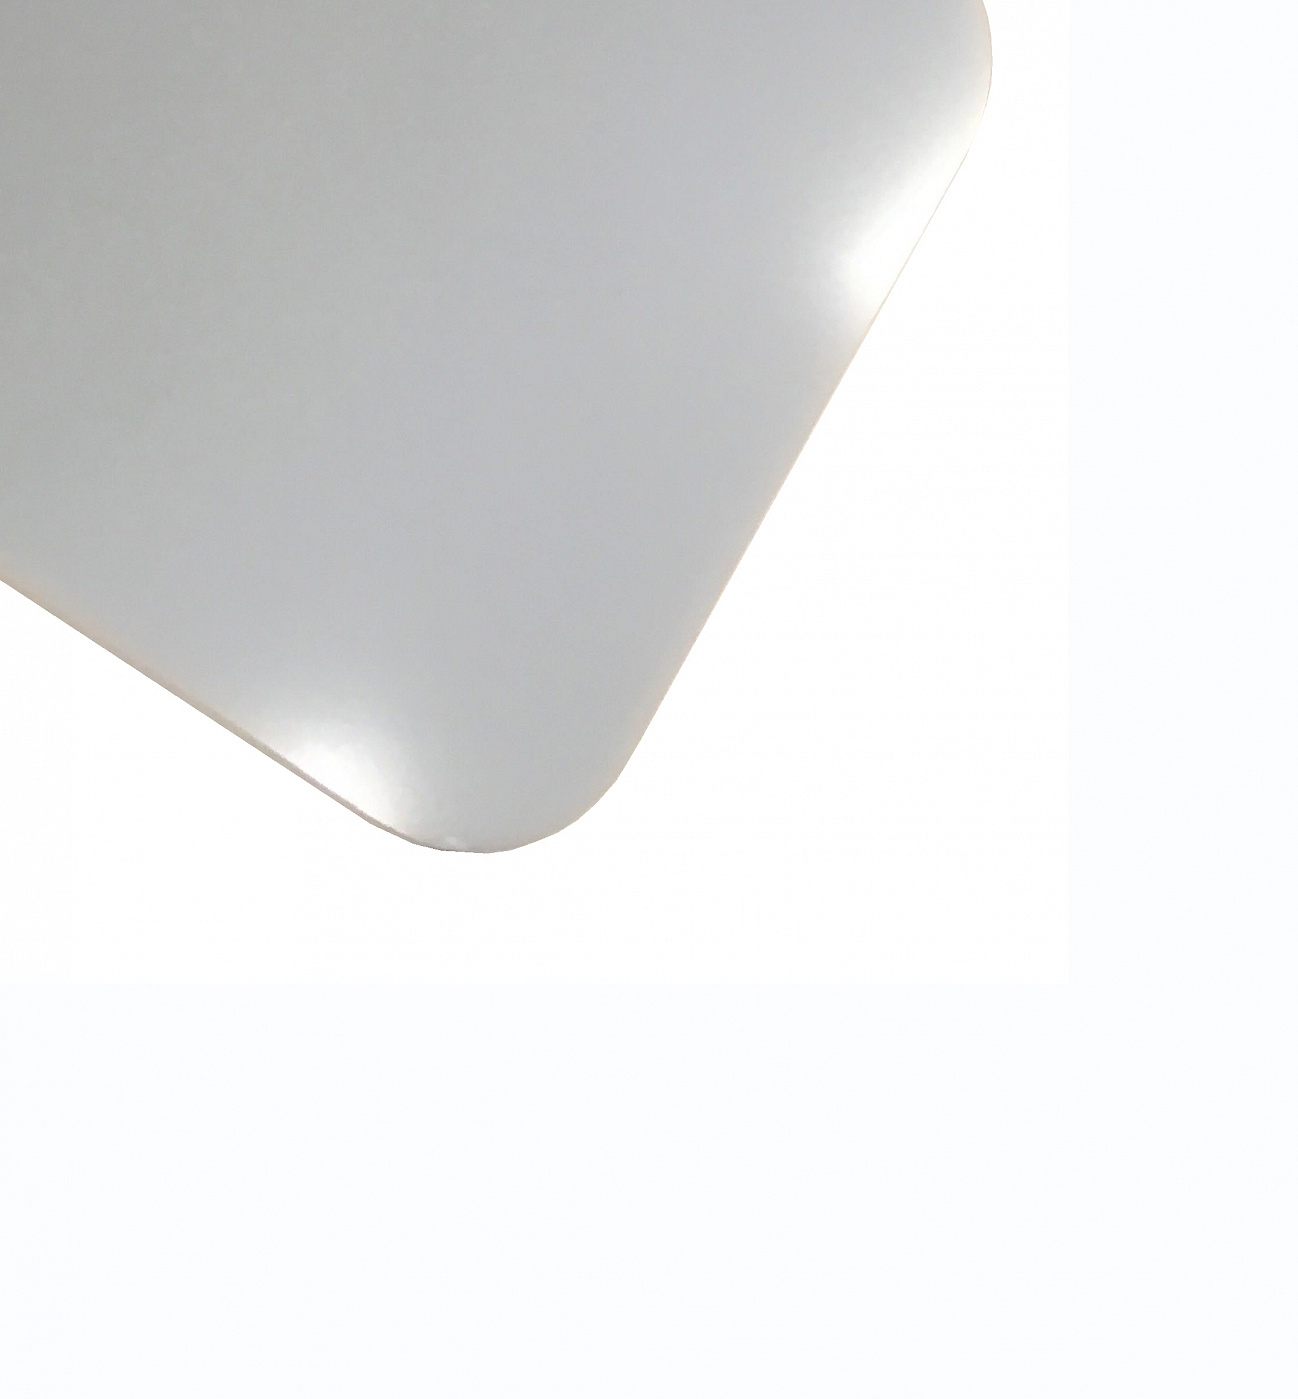 Планшет для пленэра из оргстекла 3 мм, под лист размера А4+, цвет белый планшет минимед для предметных стекол на 20 мест